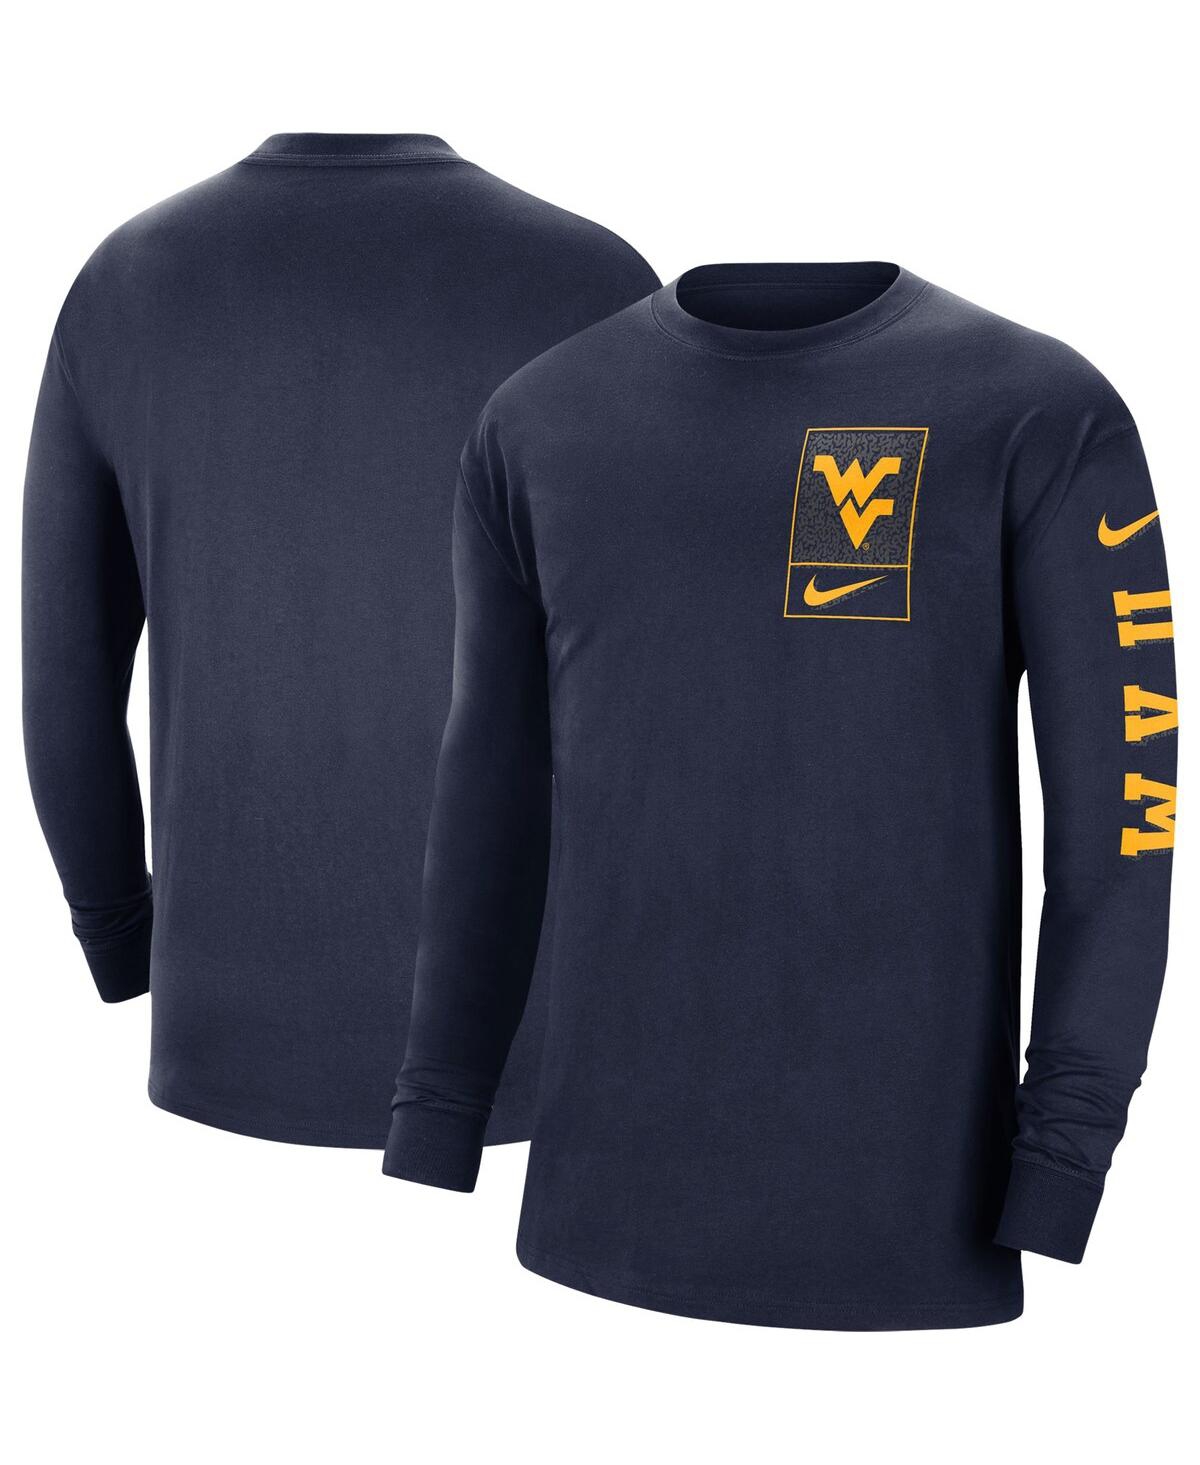 Shop Nike Men's  Navy West Virginia Mountaineers Seasonal Max90 2-hit Long Sleeve T-shirt